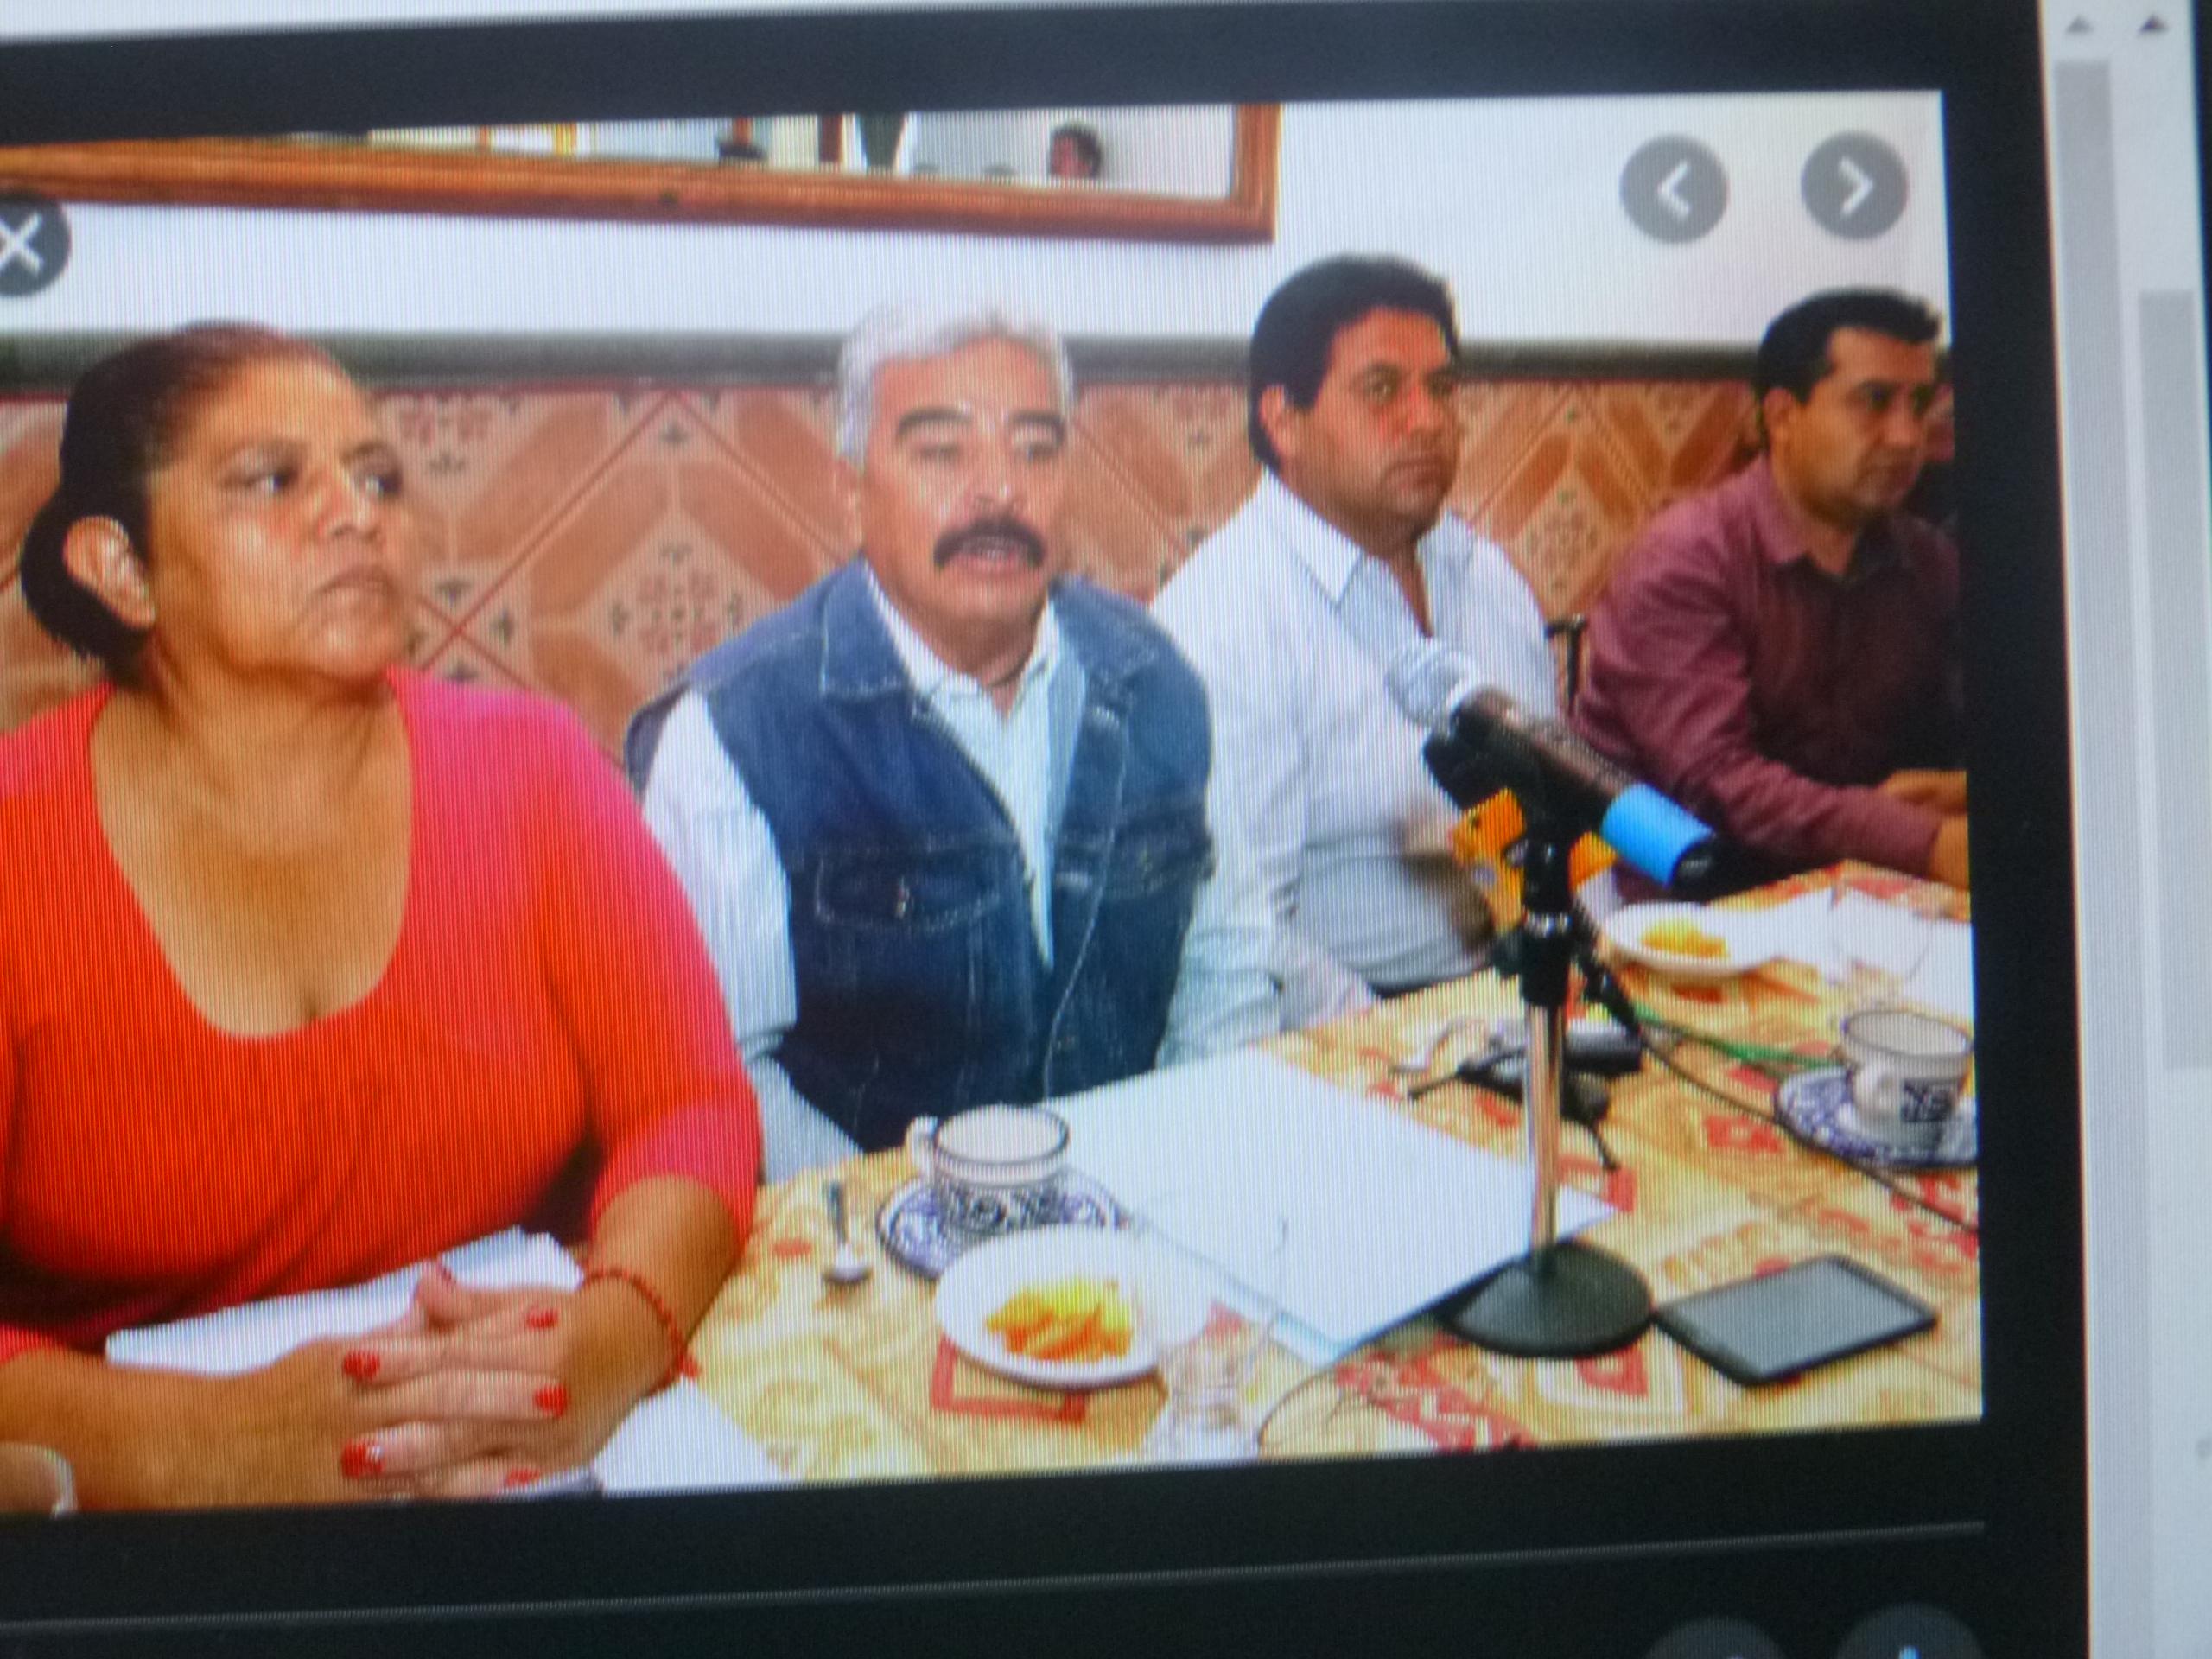 Son 11 los tianguis de la federación Doroteo Arango que se mantienen en funcionamiento, admitió Antonio Ordaz